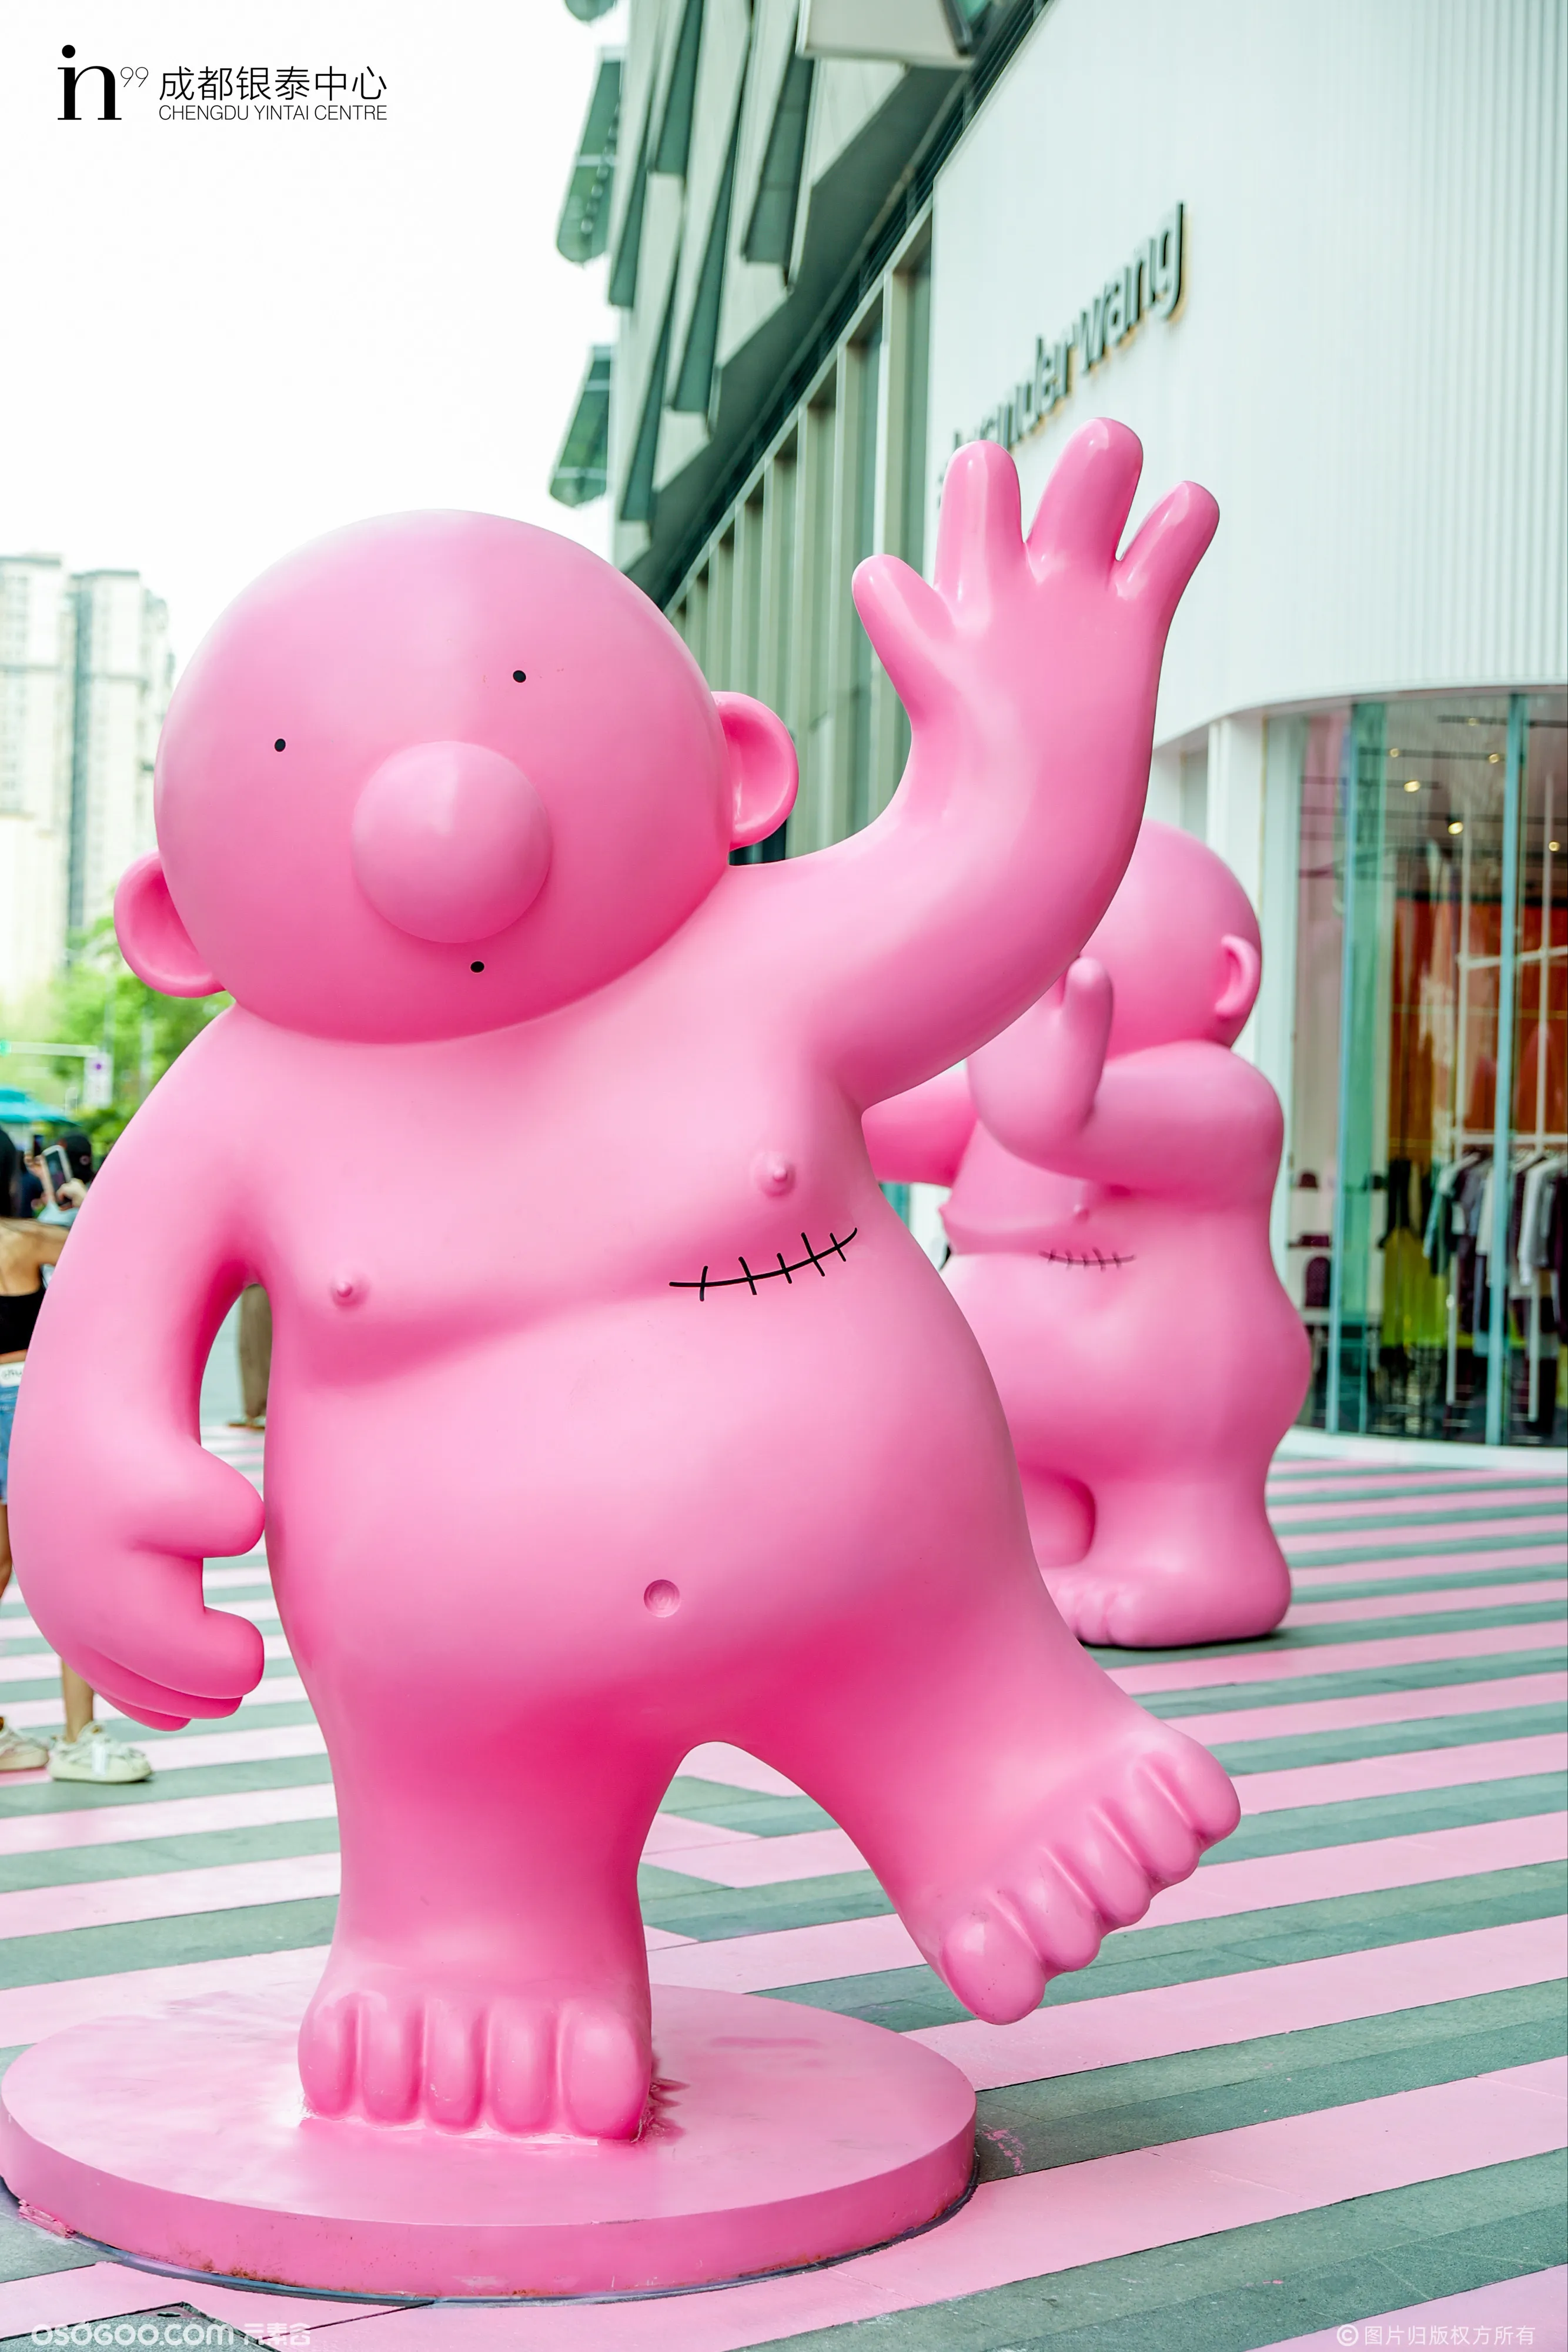 一眼就爱上粉粉小胖娃「 Mr.Rose巨型小粉娃中国首展 」